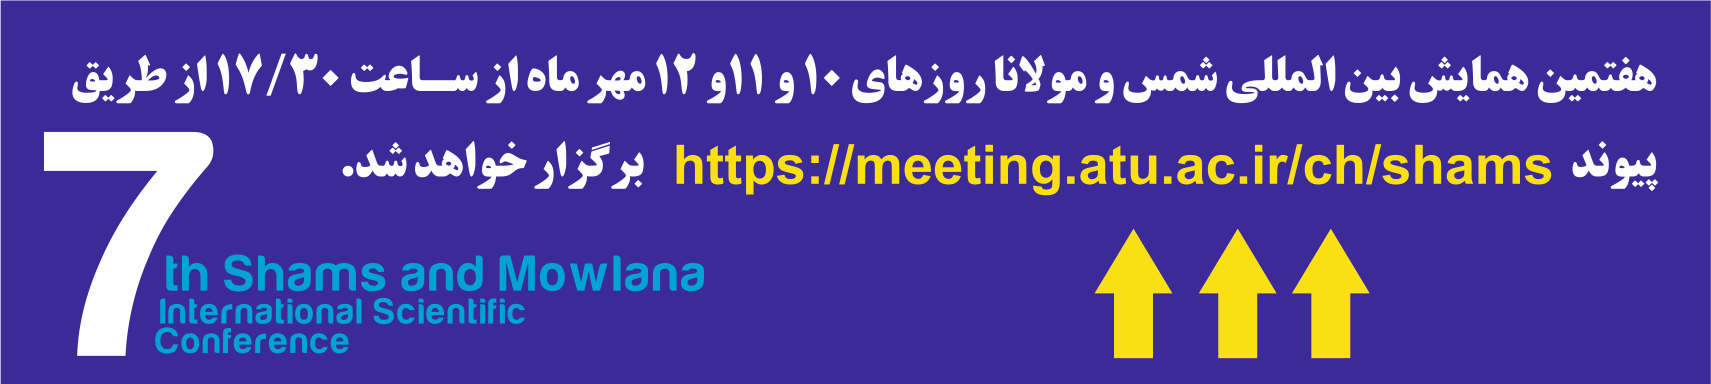 هفتمین همایش بین المللی شمس و مولانا روزهای ۱۰ و ۱۱و ۱۲ مهر ماه  برگزار خواهد شد.